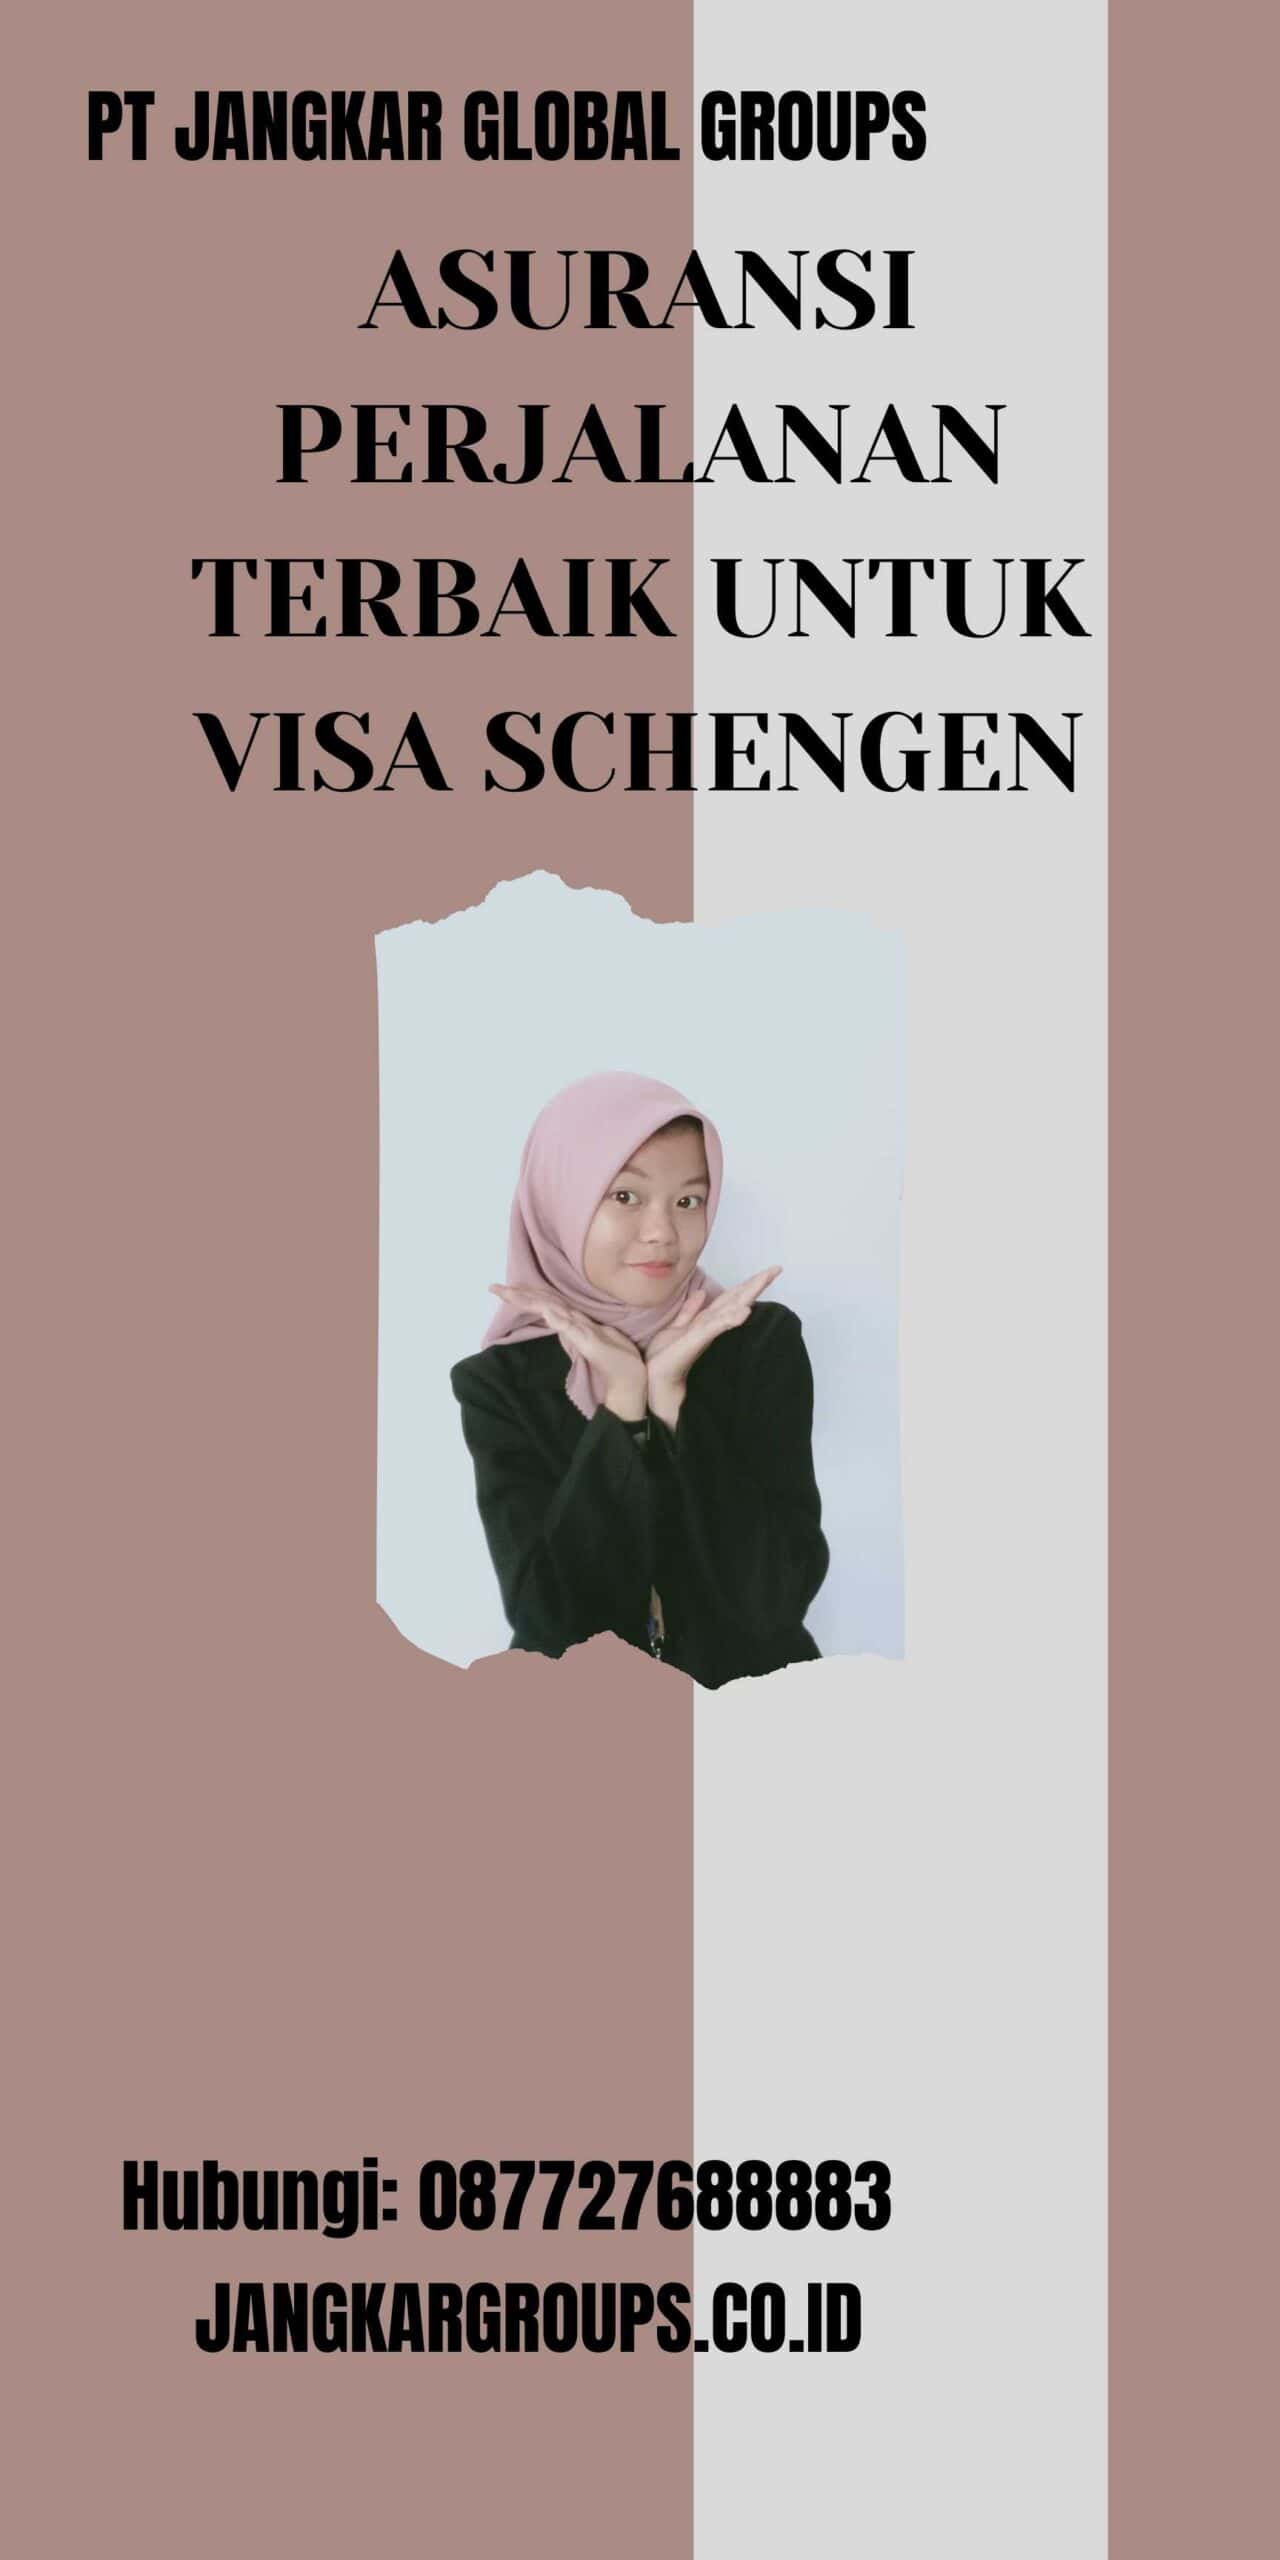 Asuransi Perjalanan Terbaik untuk Visa Schengen